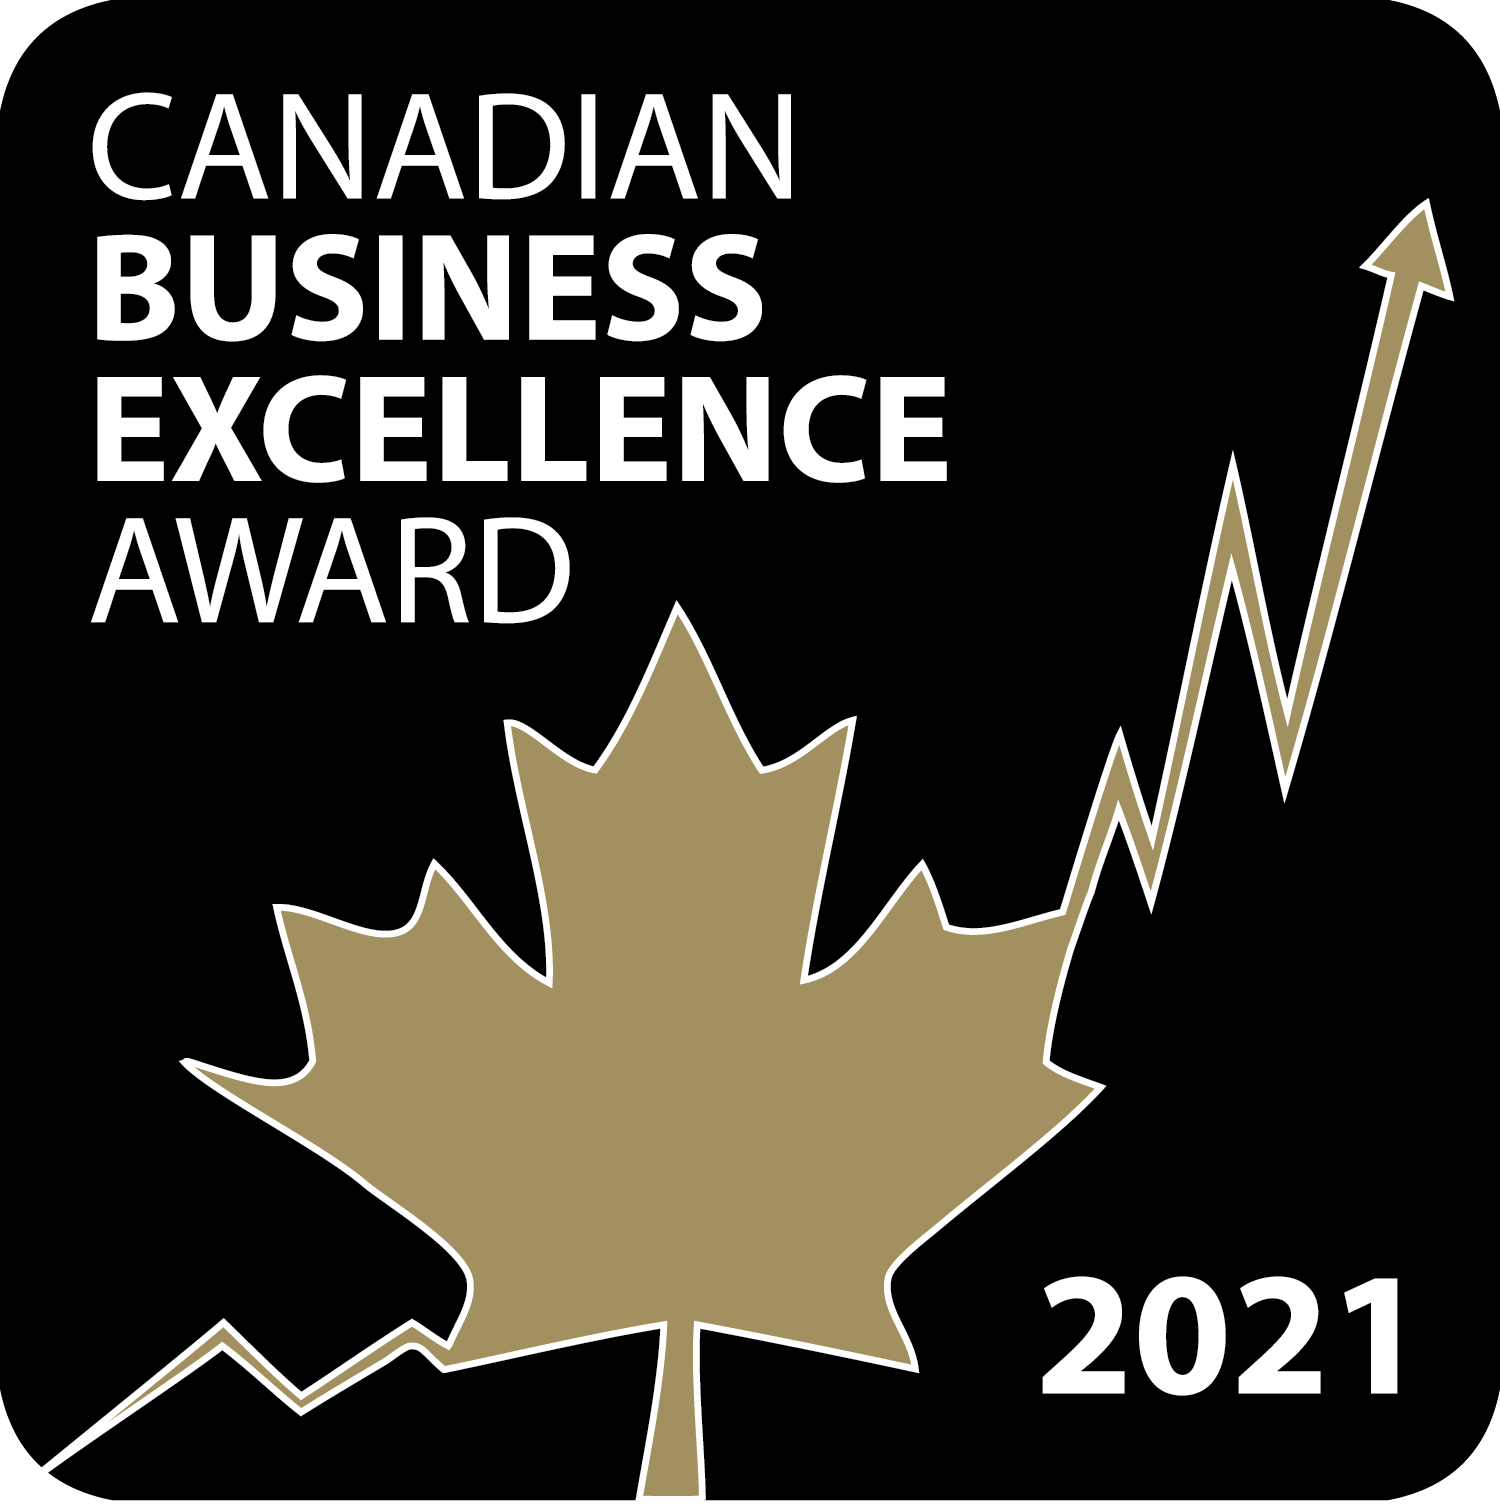 Prix canadien d’excellence en affaires pour la troisième année consécutive.